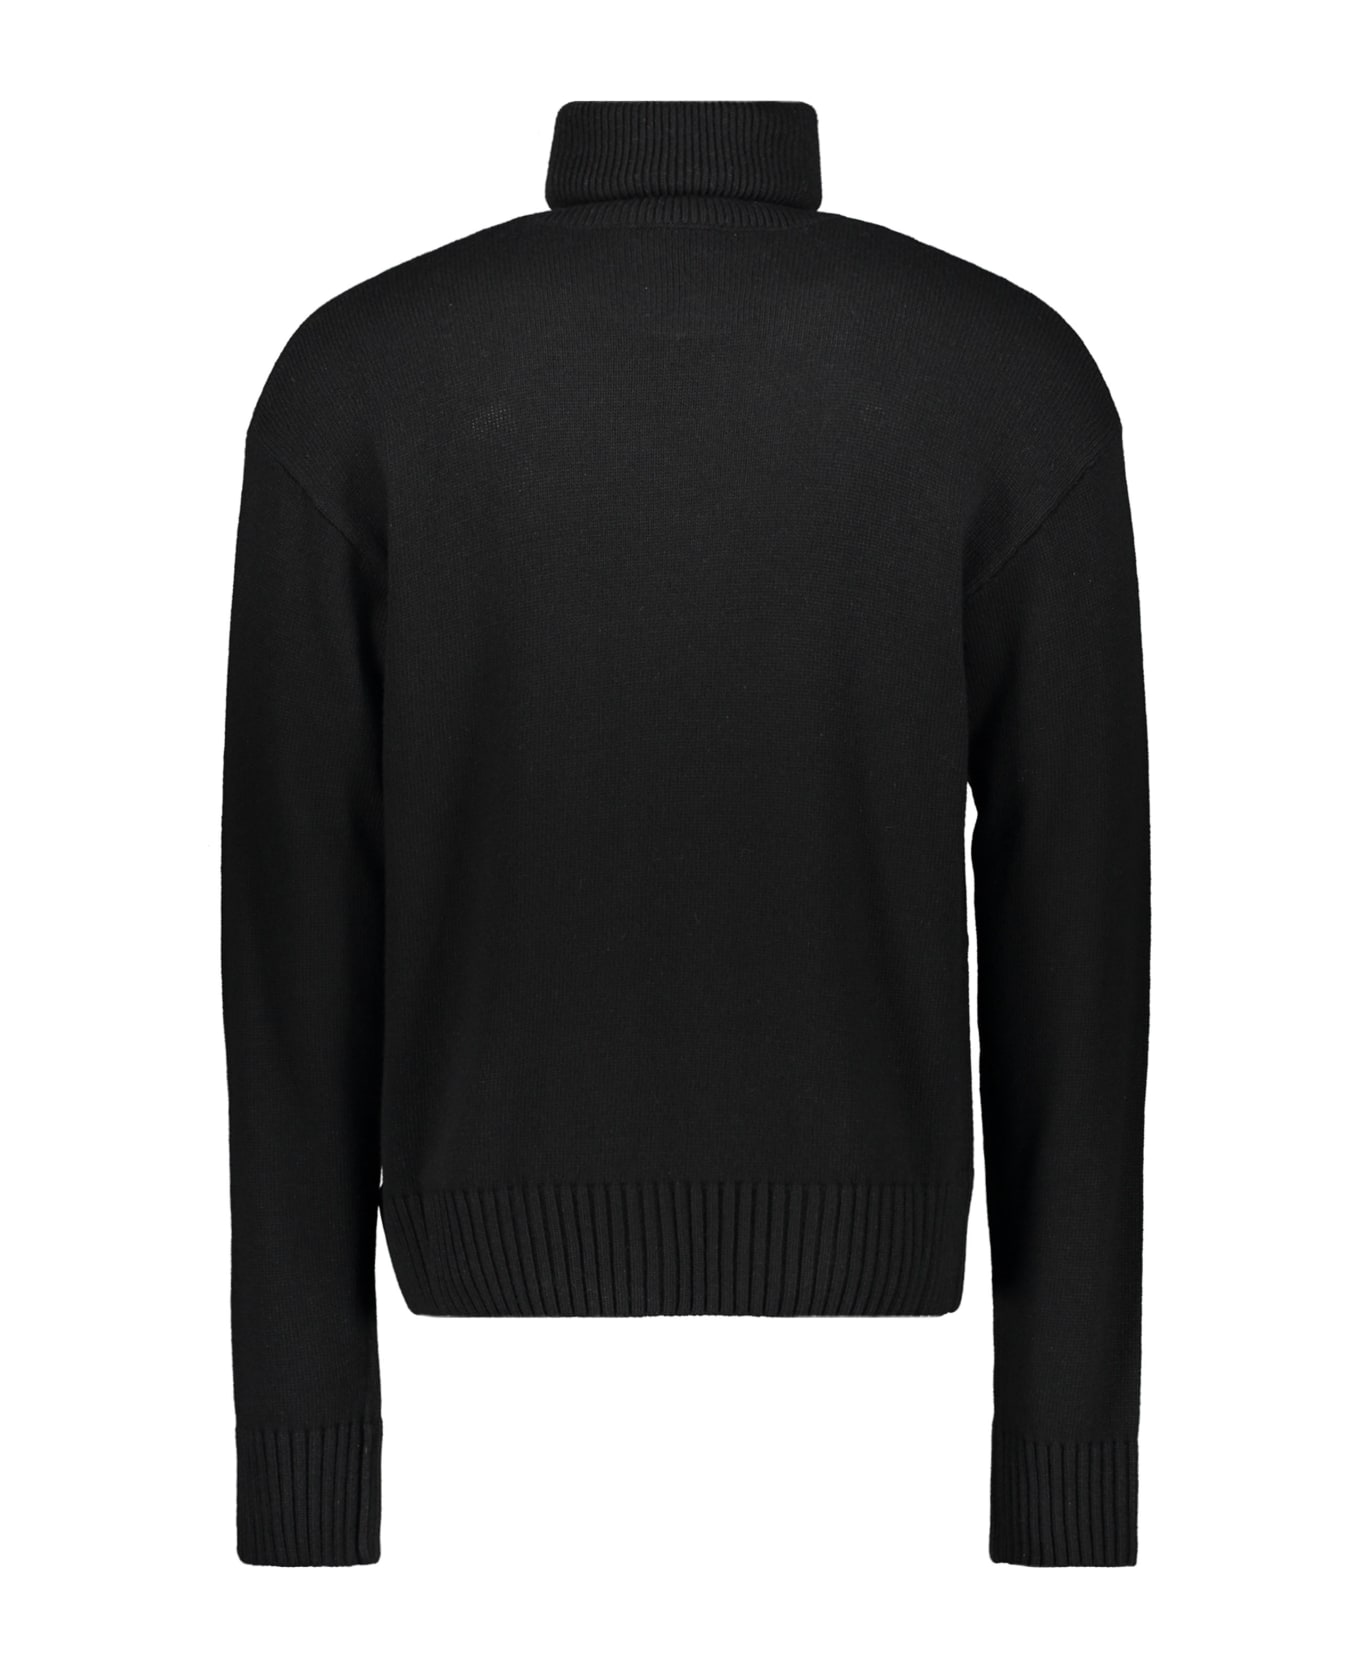 Off-White Turtleneck Sweater - black ニットウェア